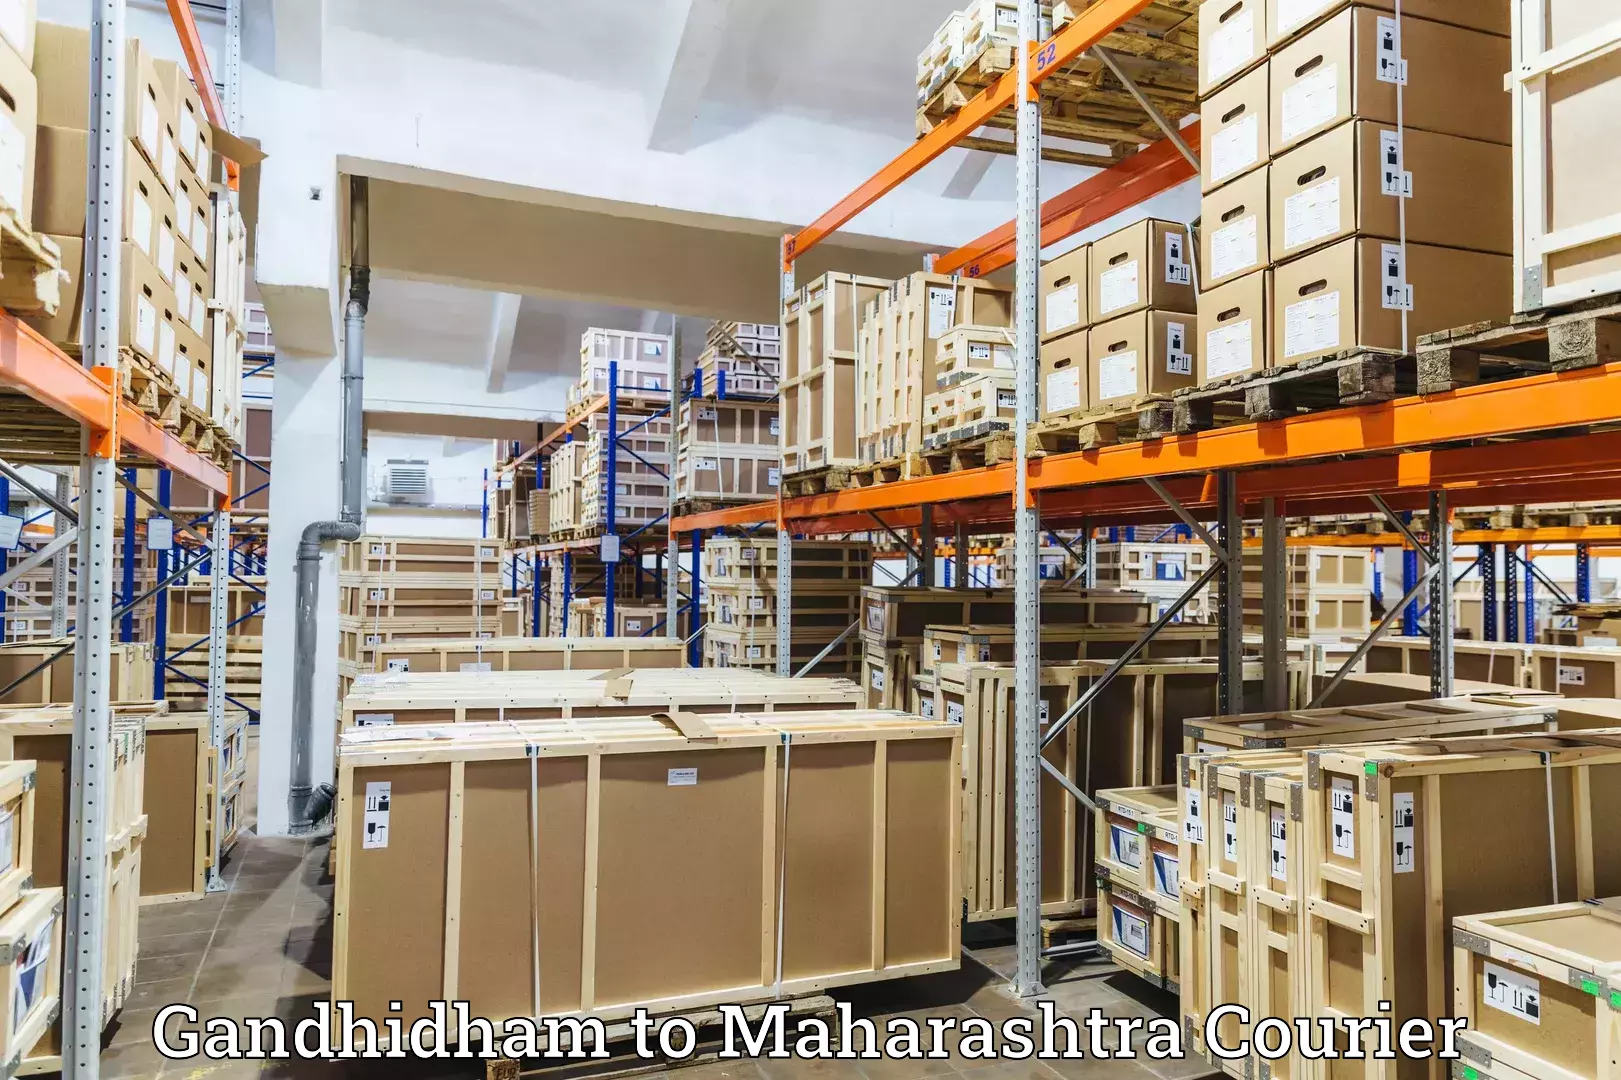 International parcel service Gandhidham to Tata Institute of Social Sciences Mumbai